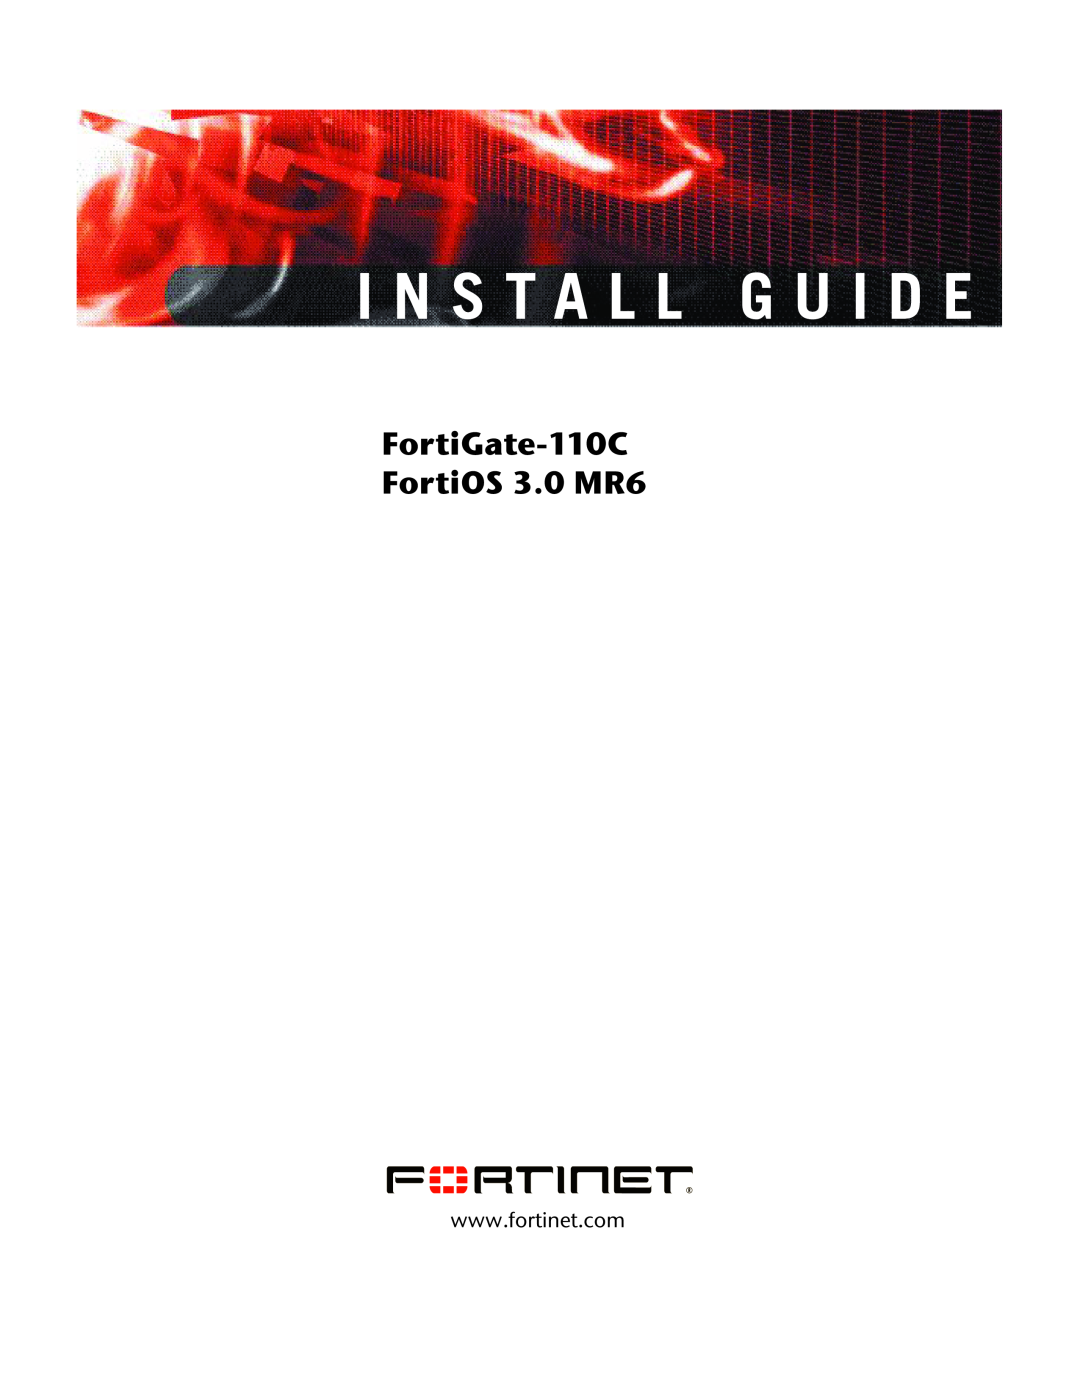 Fortinet manual I N S T A L L G U I D E, FortiGate-110C FortiOS 3.0 MR6 